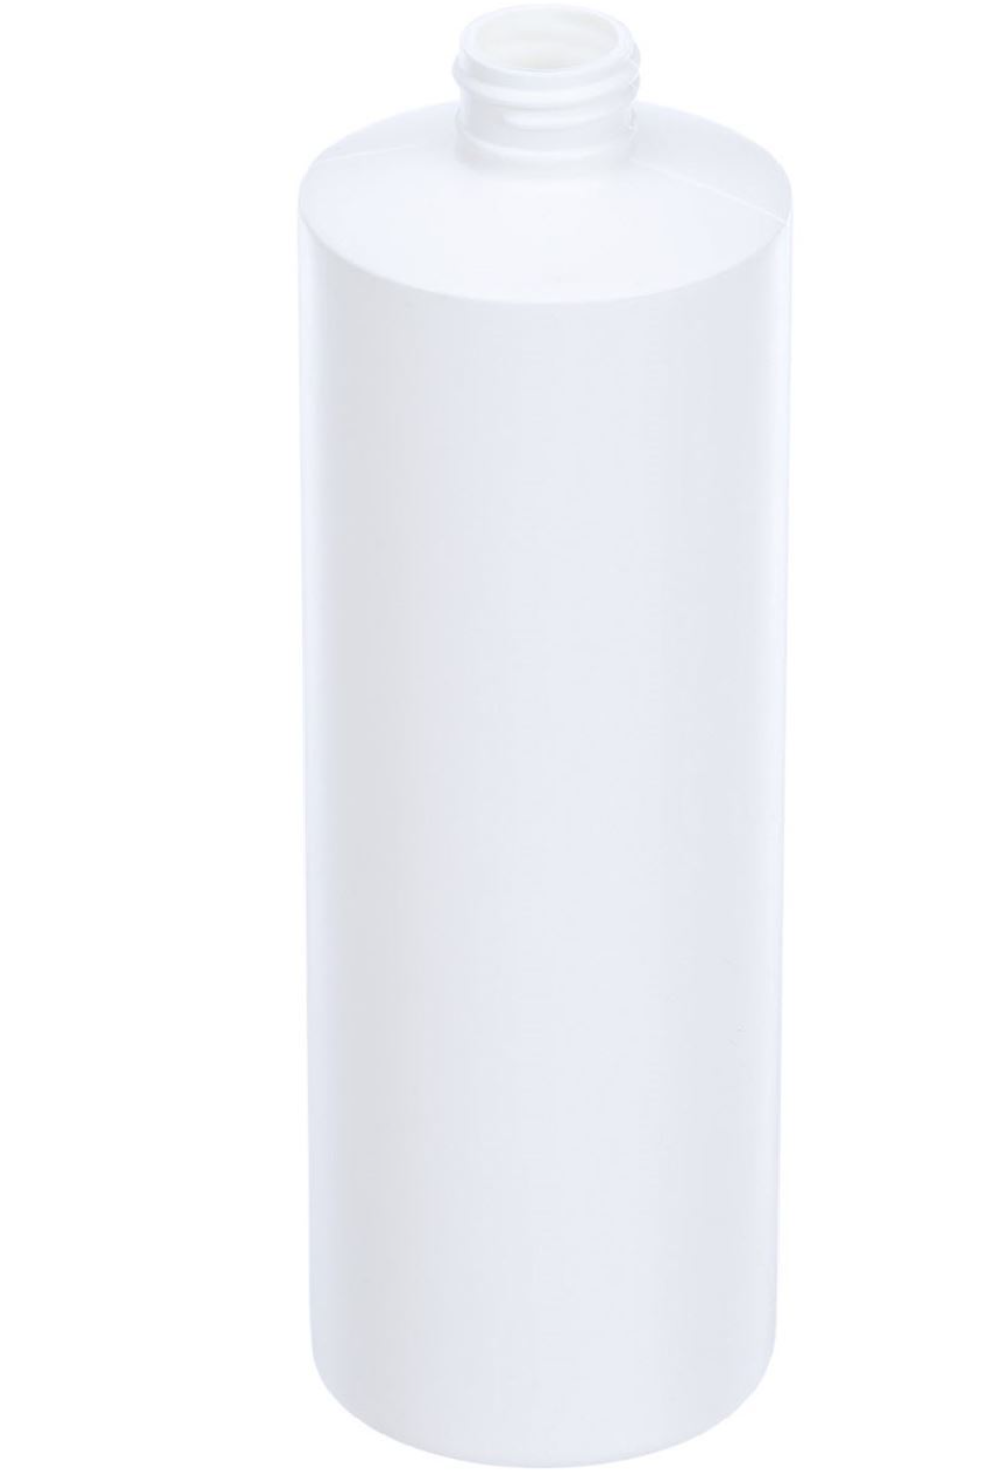 One Dozen 16 oz White HDPE Plastic Cylinder Round Bottle - 24-410 Neck Finish - INCLUDES LIDS